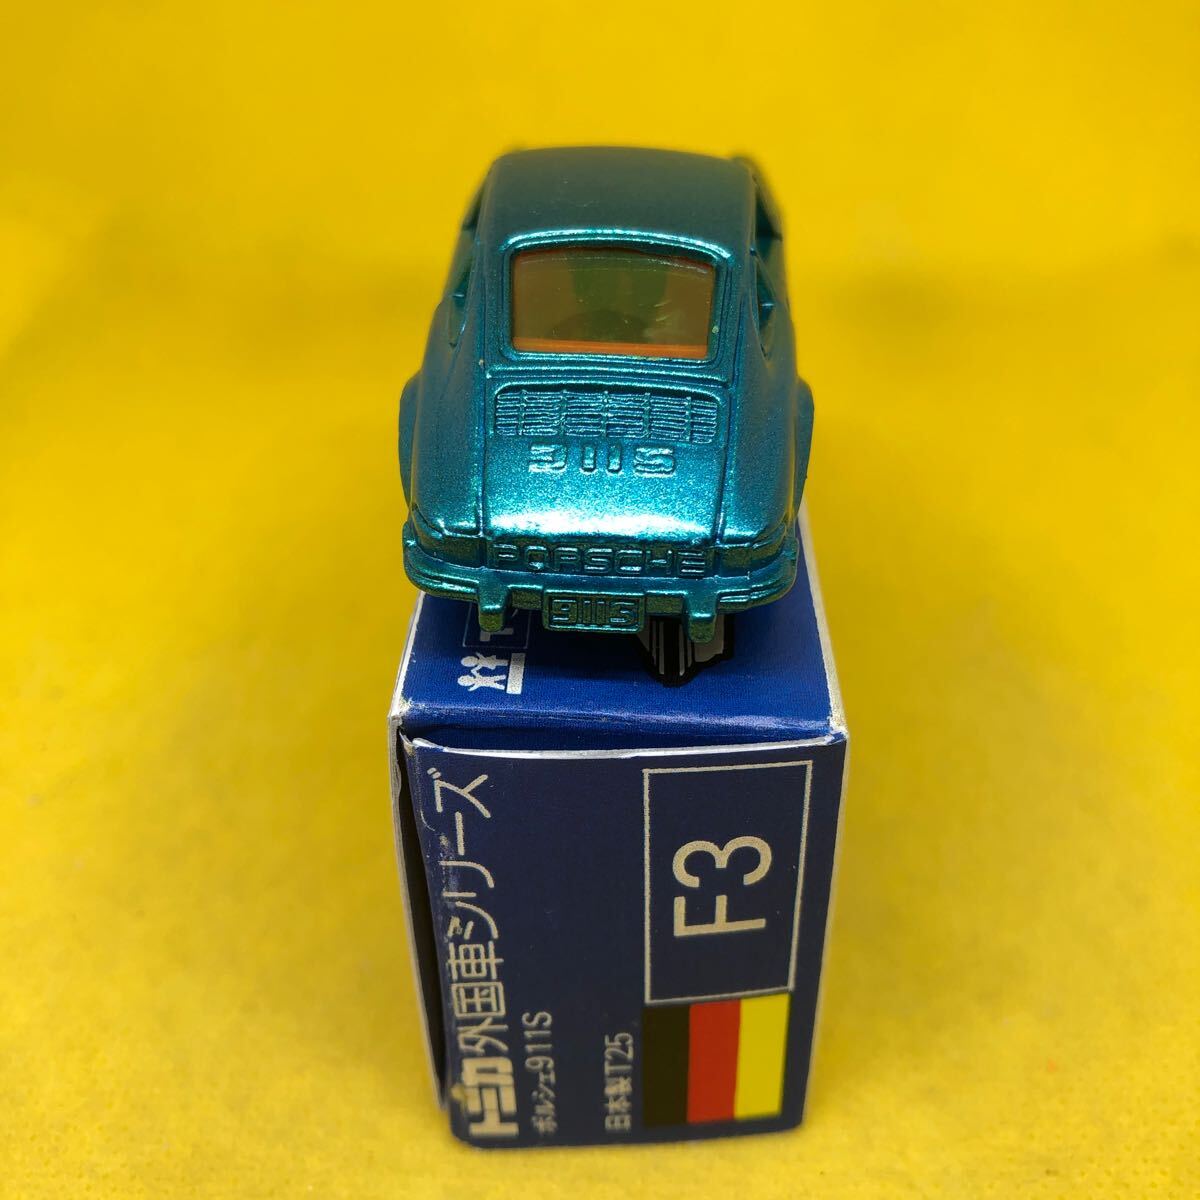 トミカ　日本製　青箱　F3 ポルシェ　911S 当時物　絶版　16